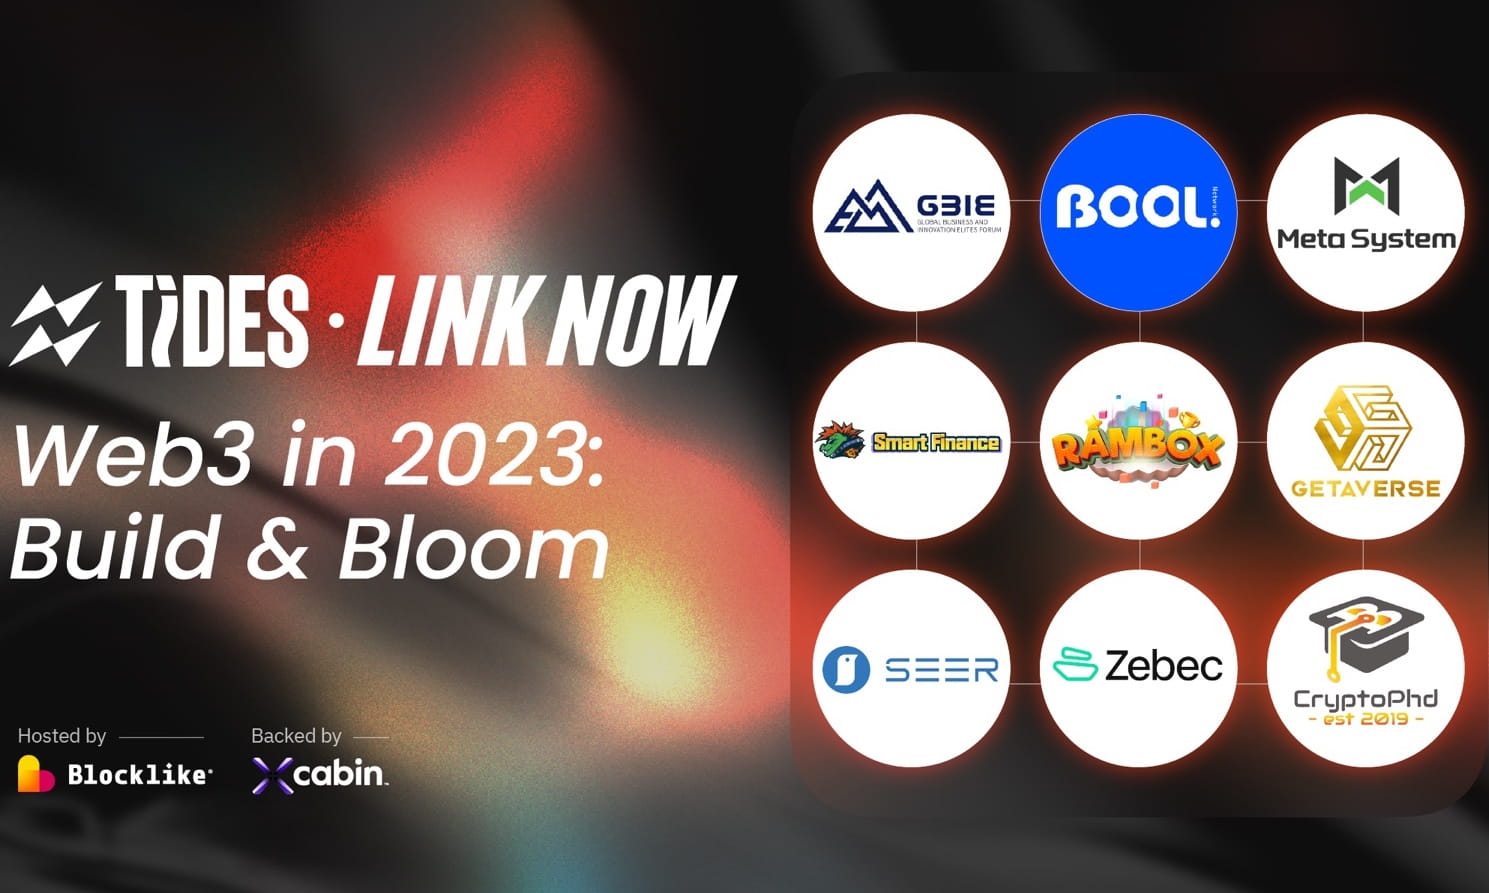 Blocklike Link Now-Web3 in 2023: Build & Bloom